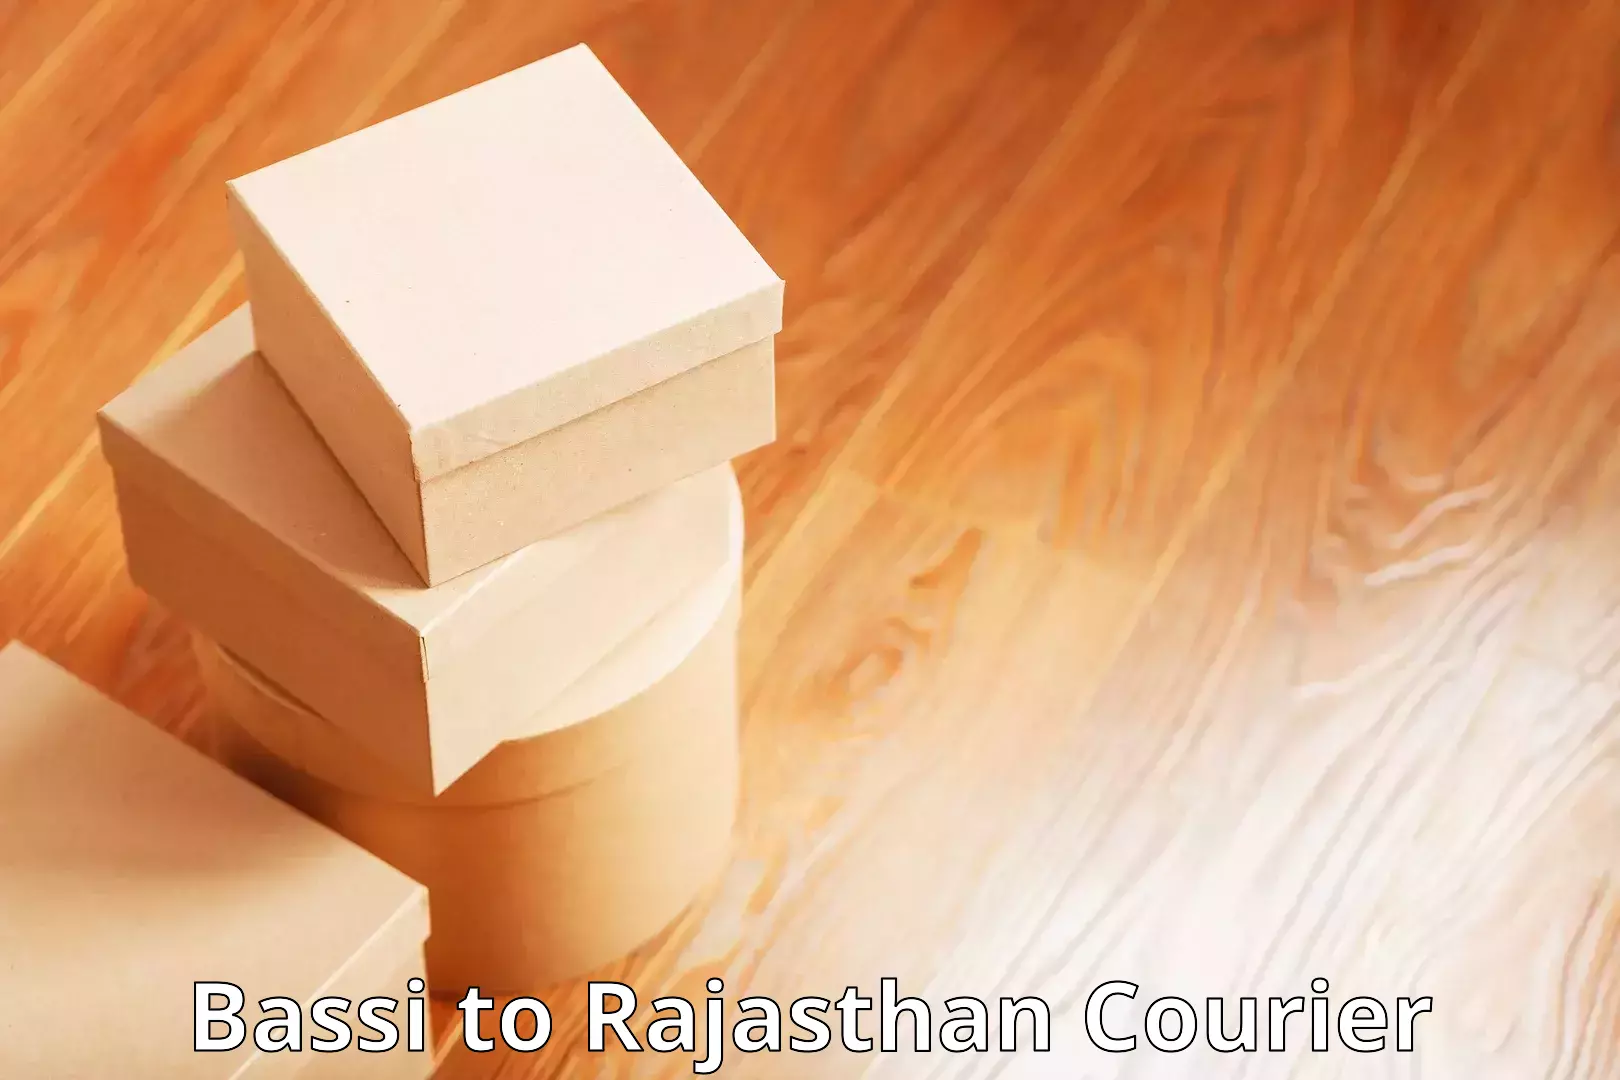 Door-to-door freight service Bassi to Rajasthan